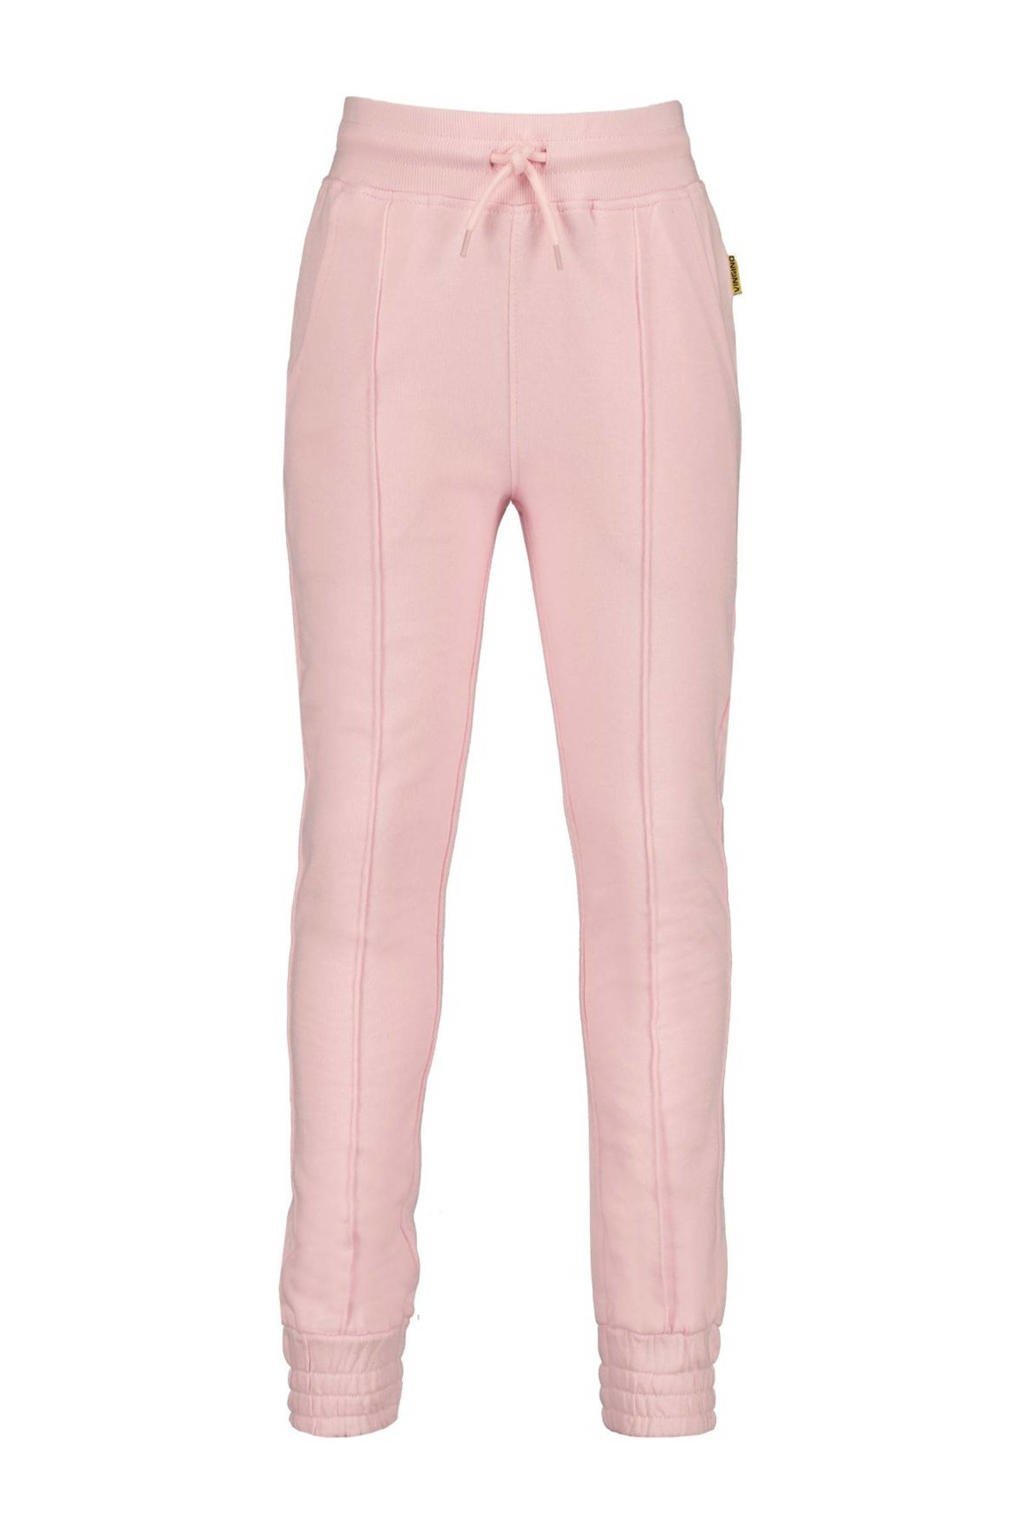 Roze meisjes Vingino loose fit joggingbroek van katoen met regular waist en elastische tailleband met koord